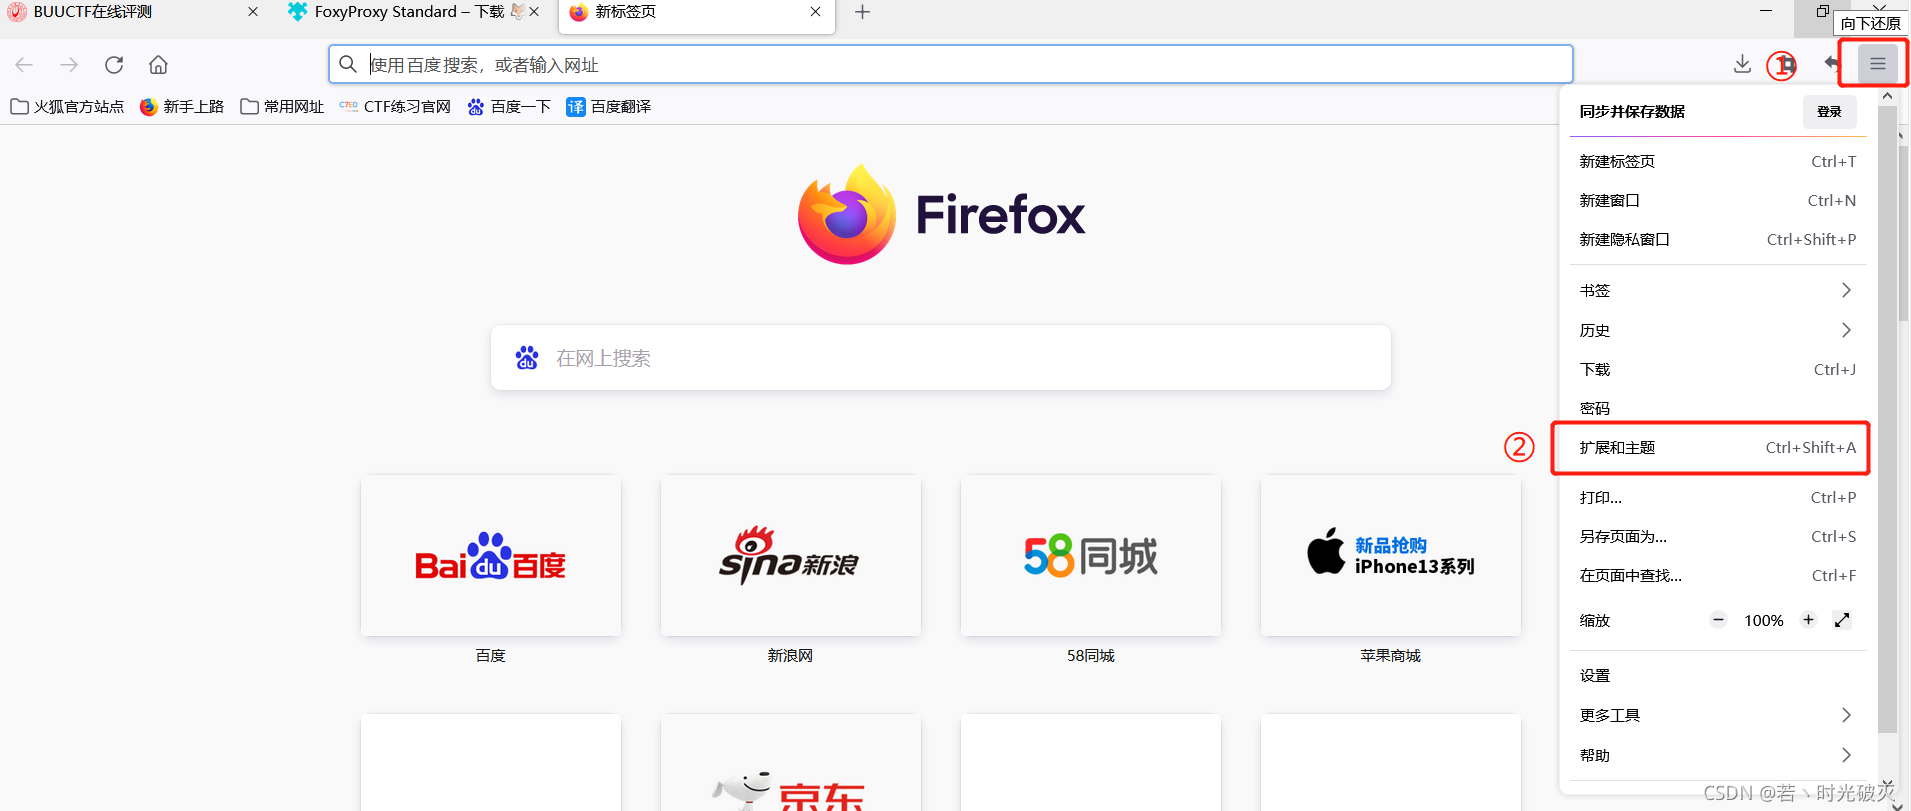 火狐浏览器怎么下载视频-火狐浏览器一键下载视频教程指南大全-浏览器之家